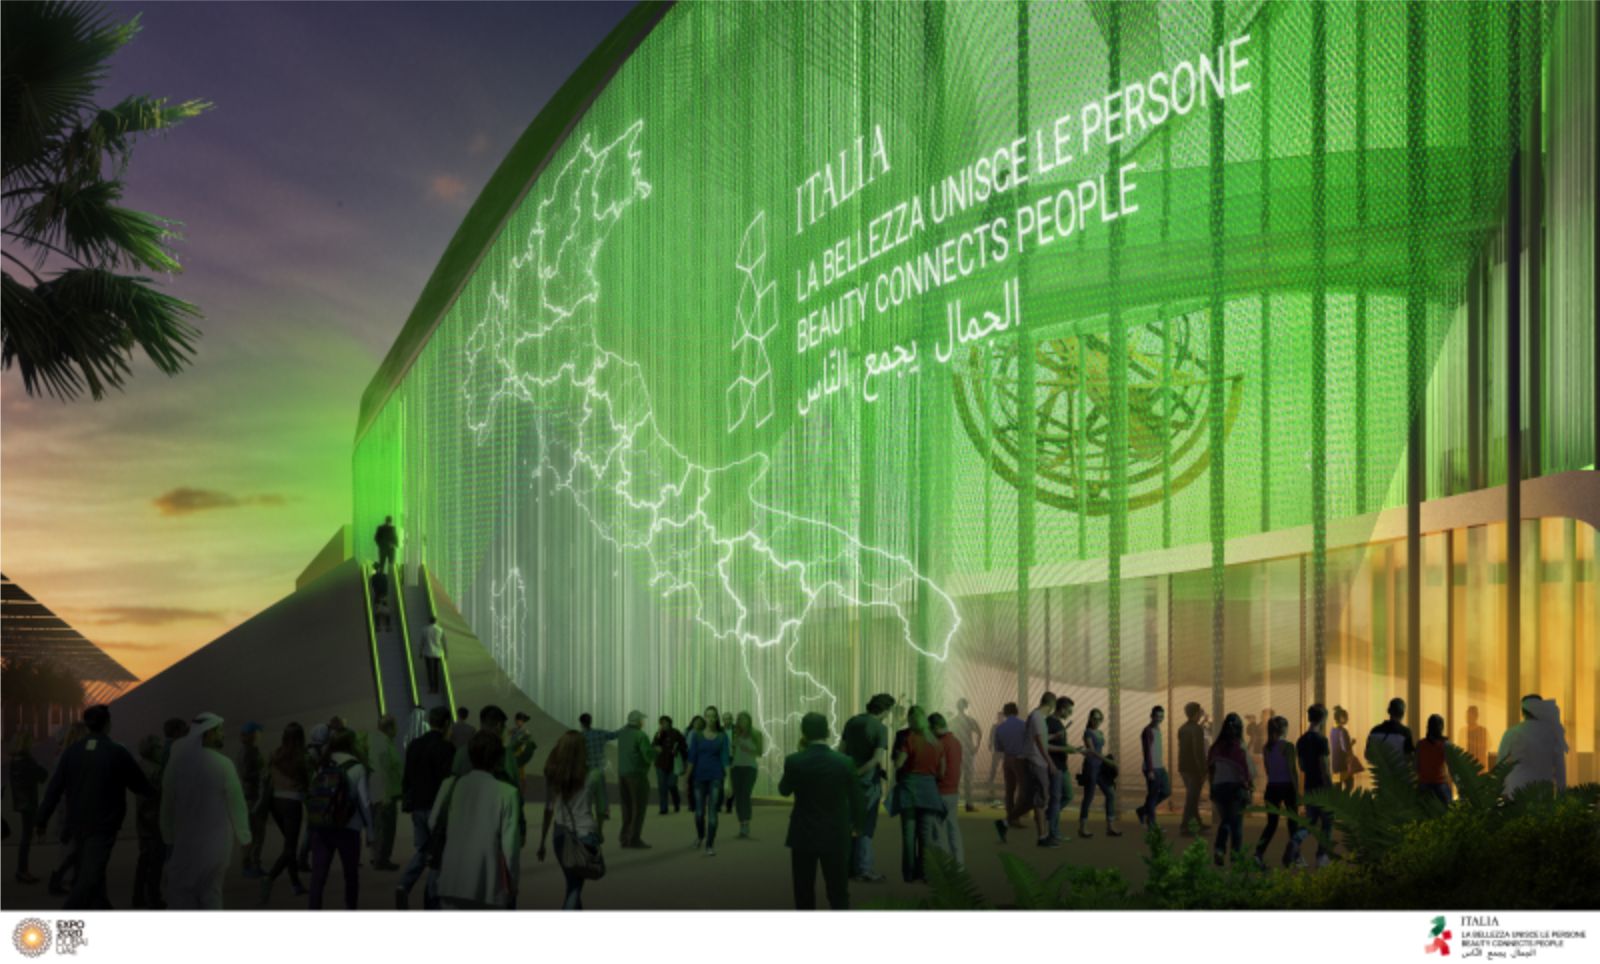 Italian Pavilion at Expo Dubai 2020